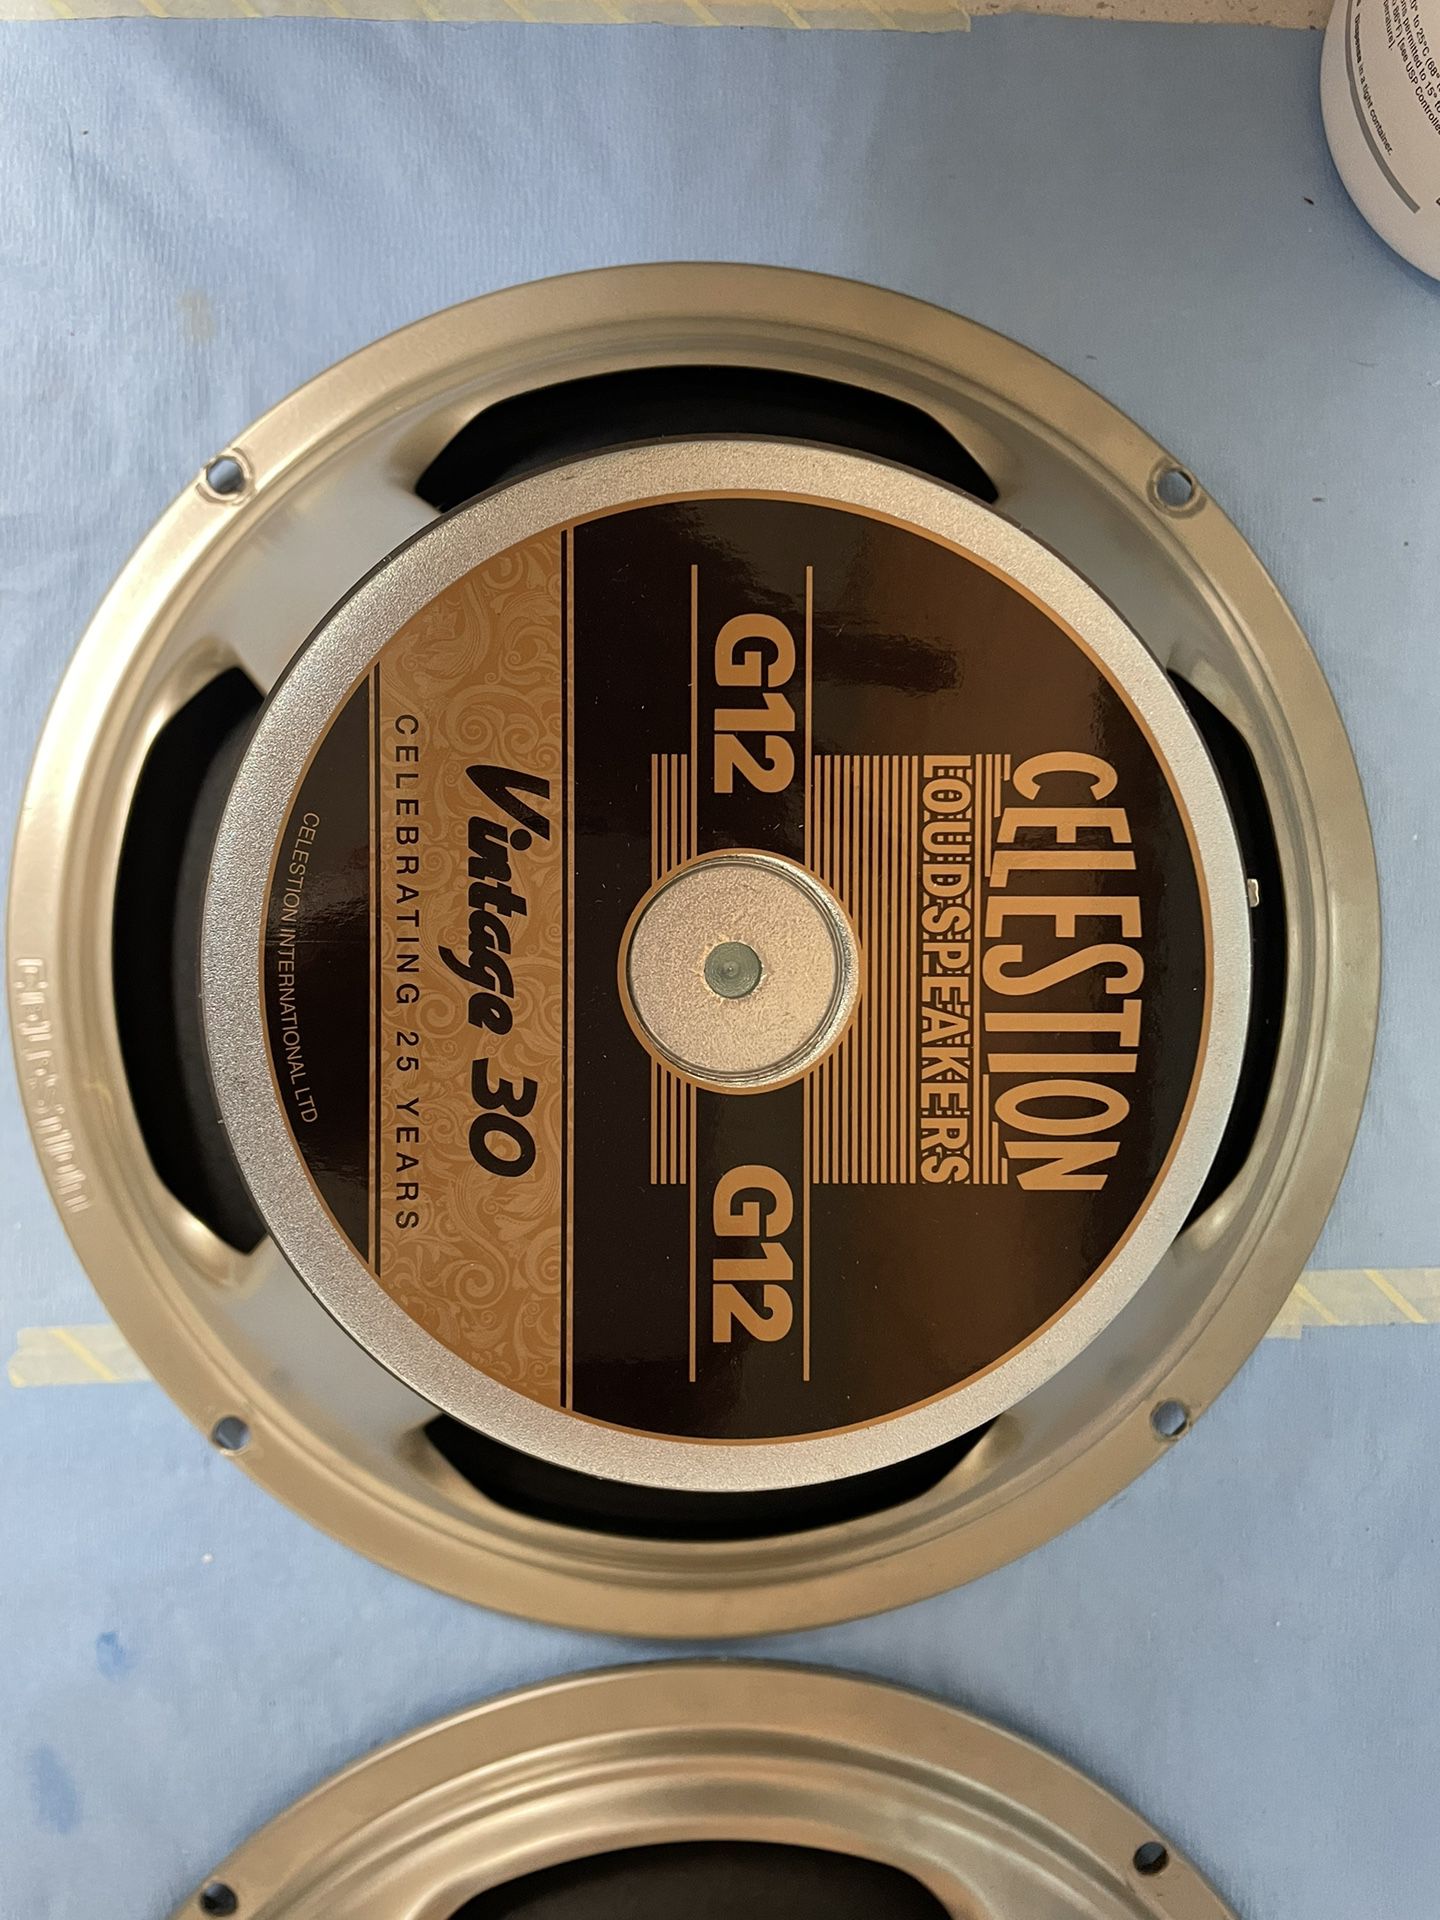 Celestion Vintage 30 Speaker